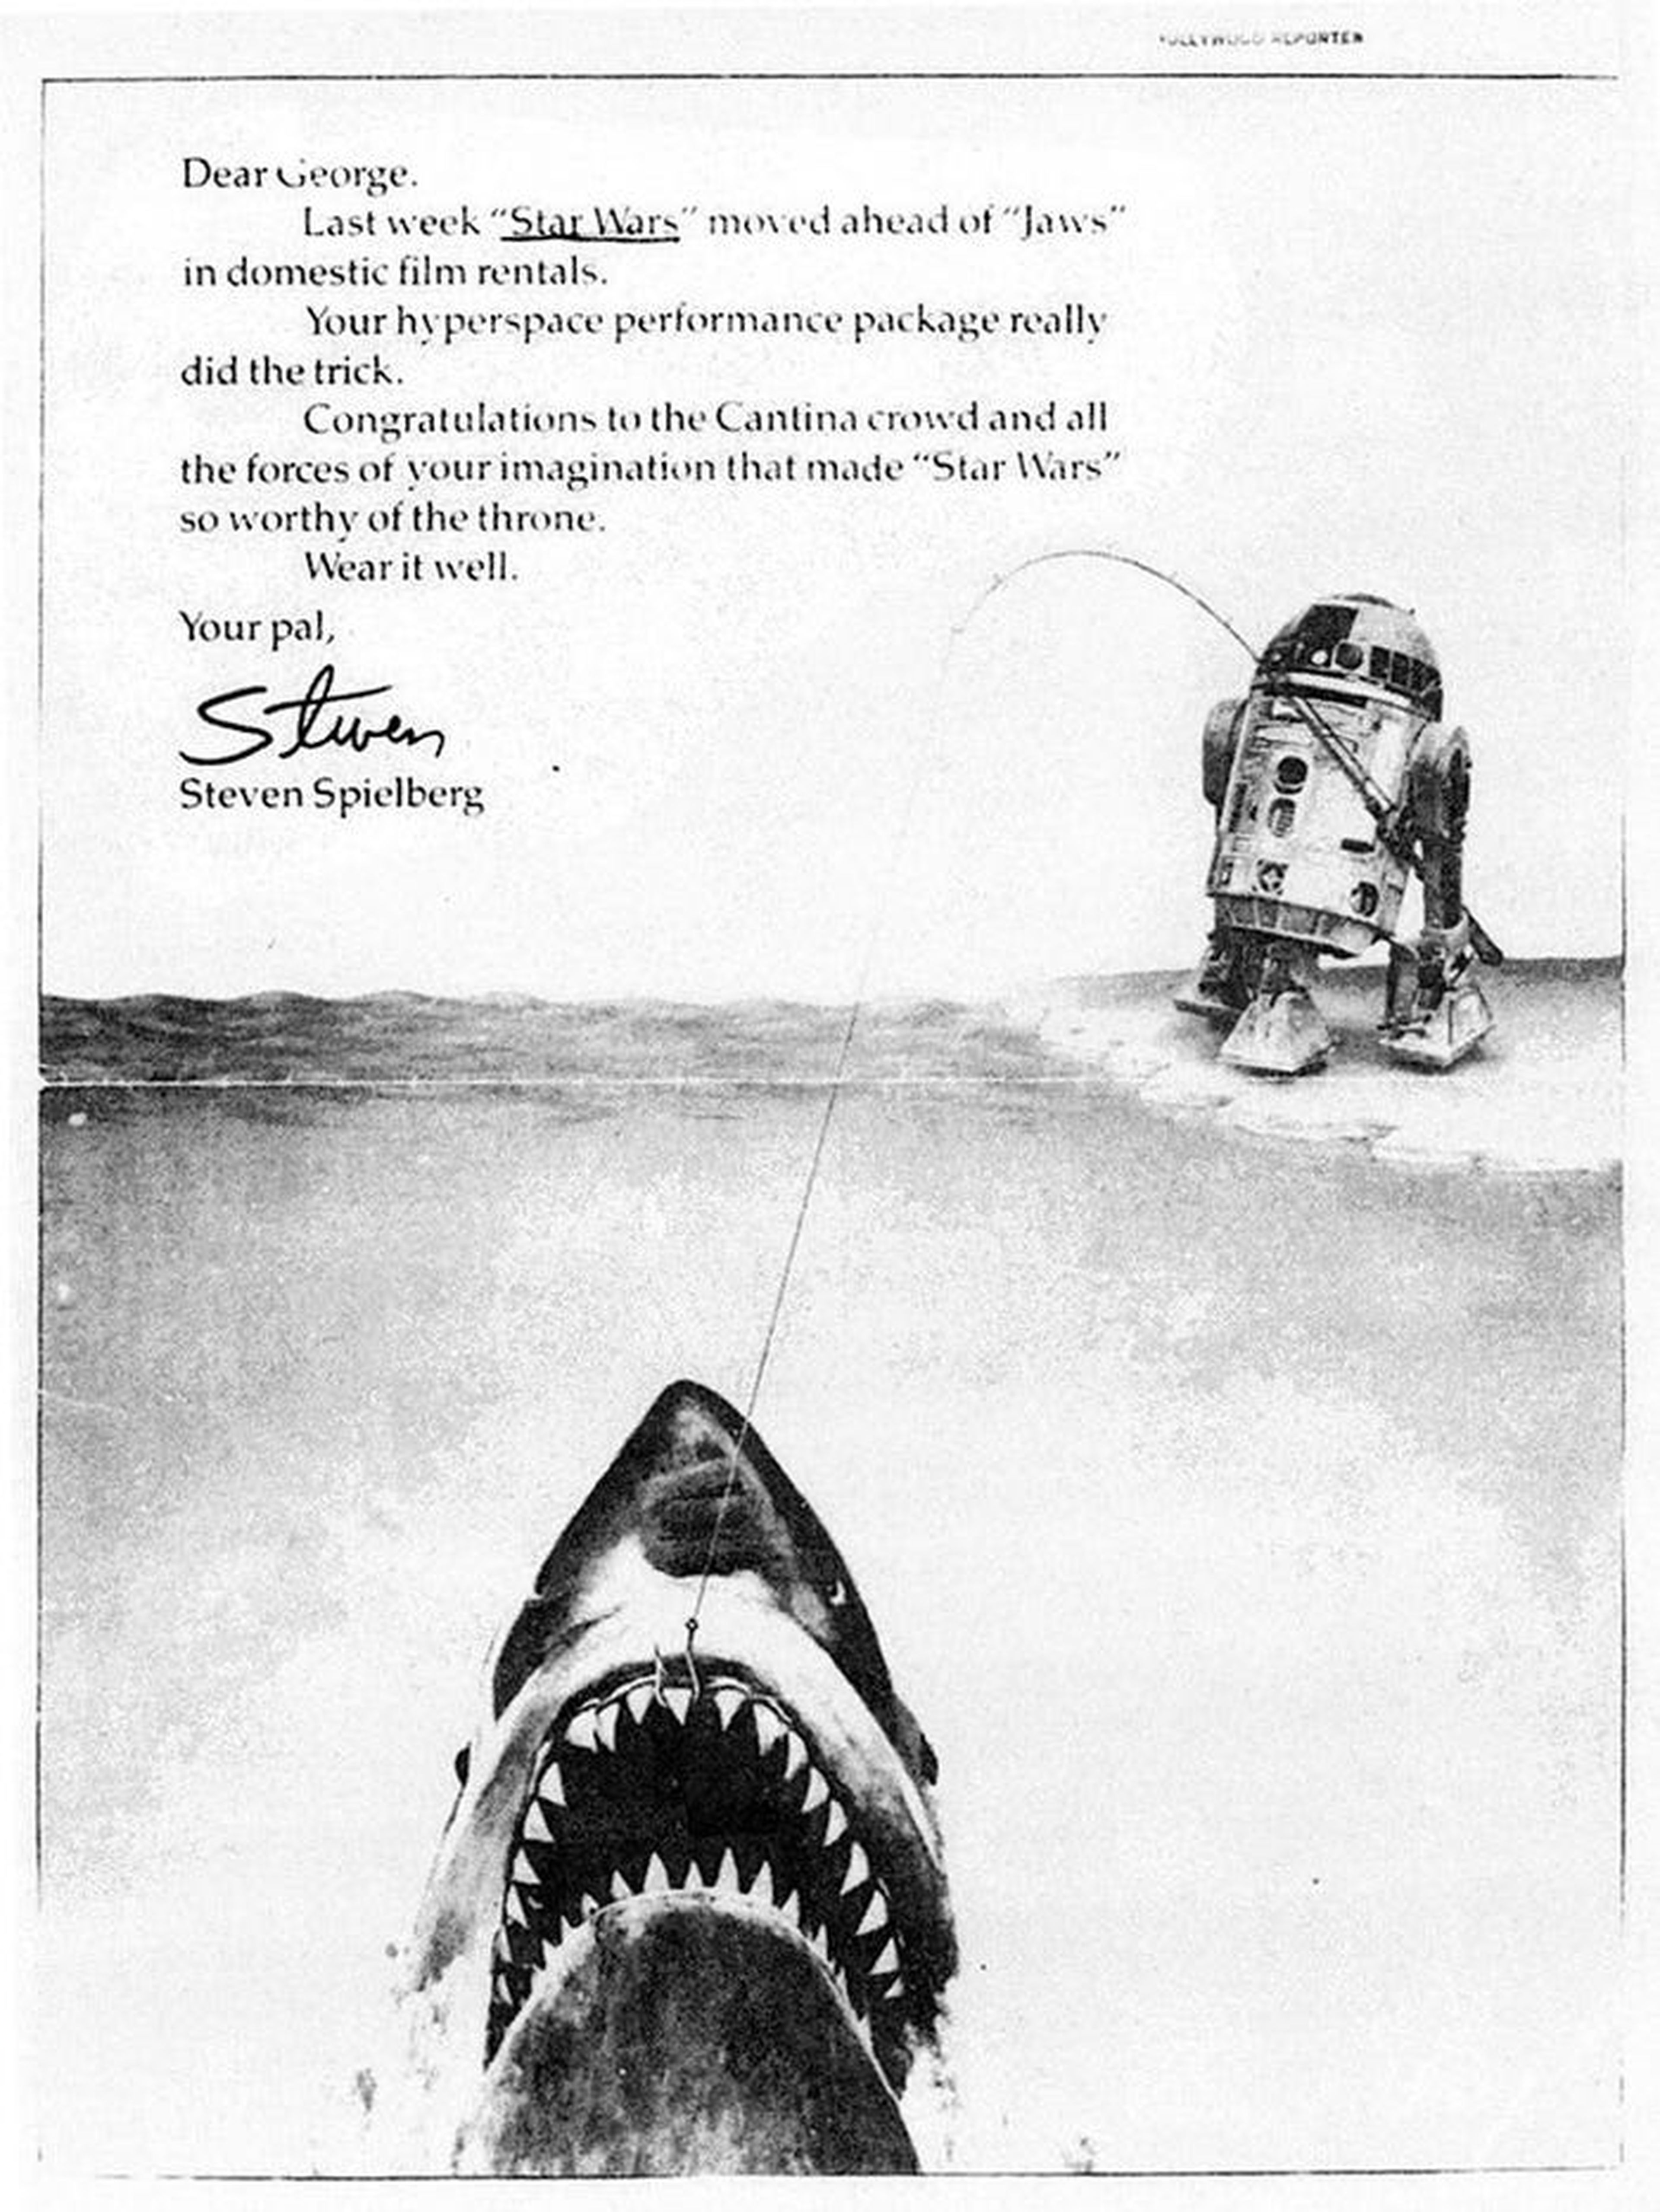 Homenaje de Spielberg a Star Wars